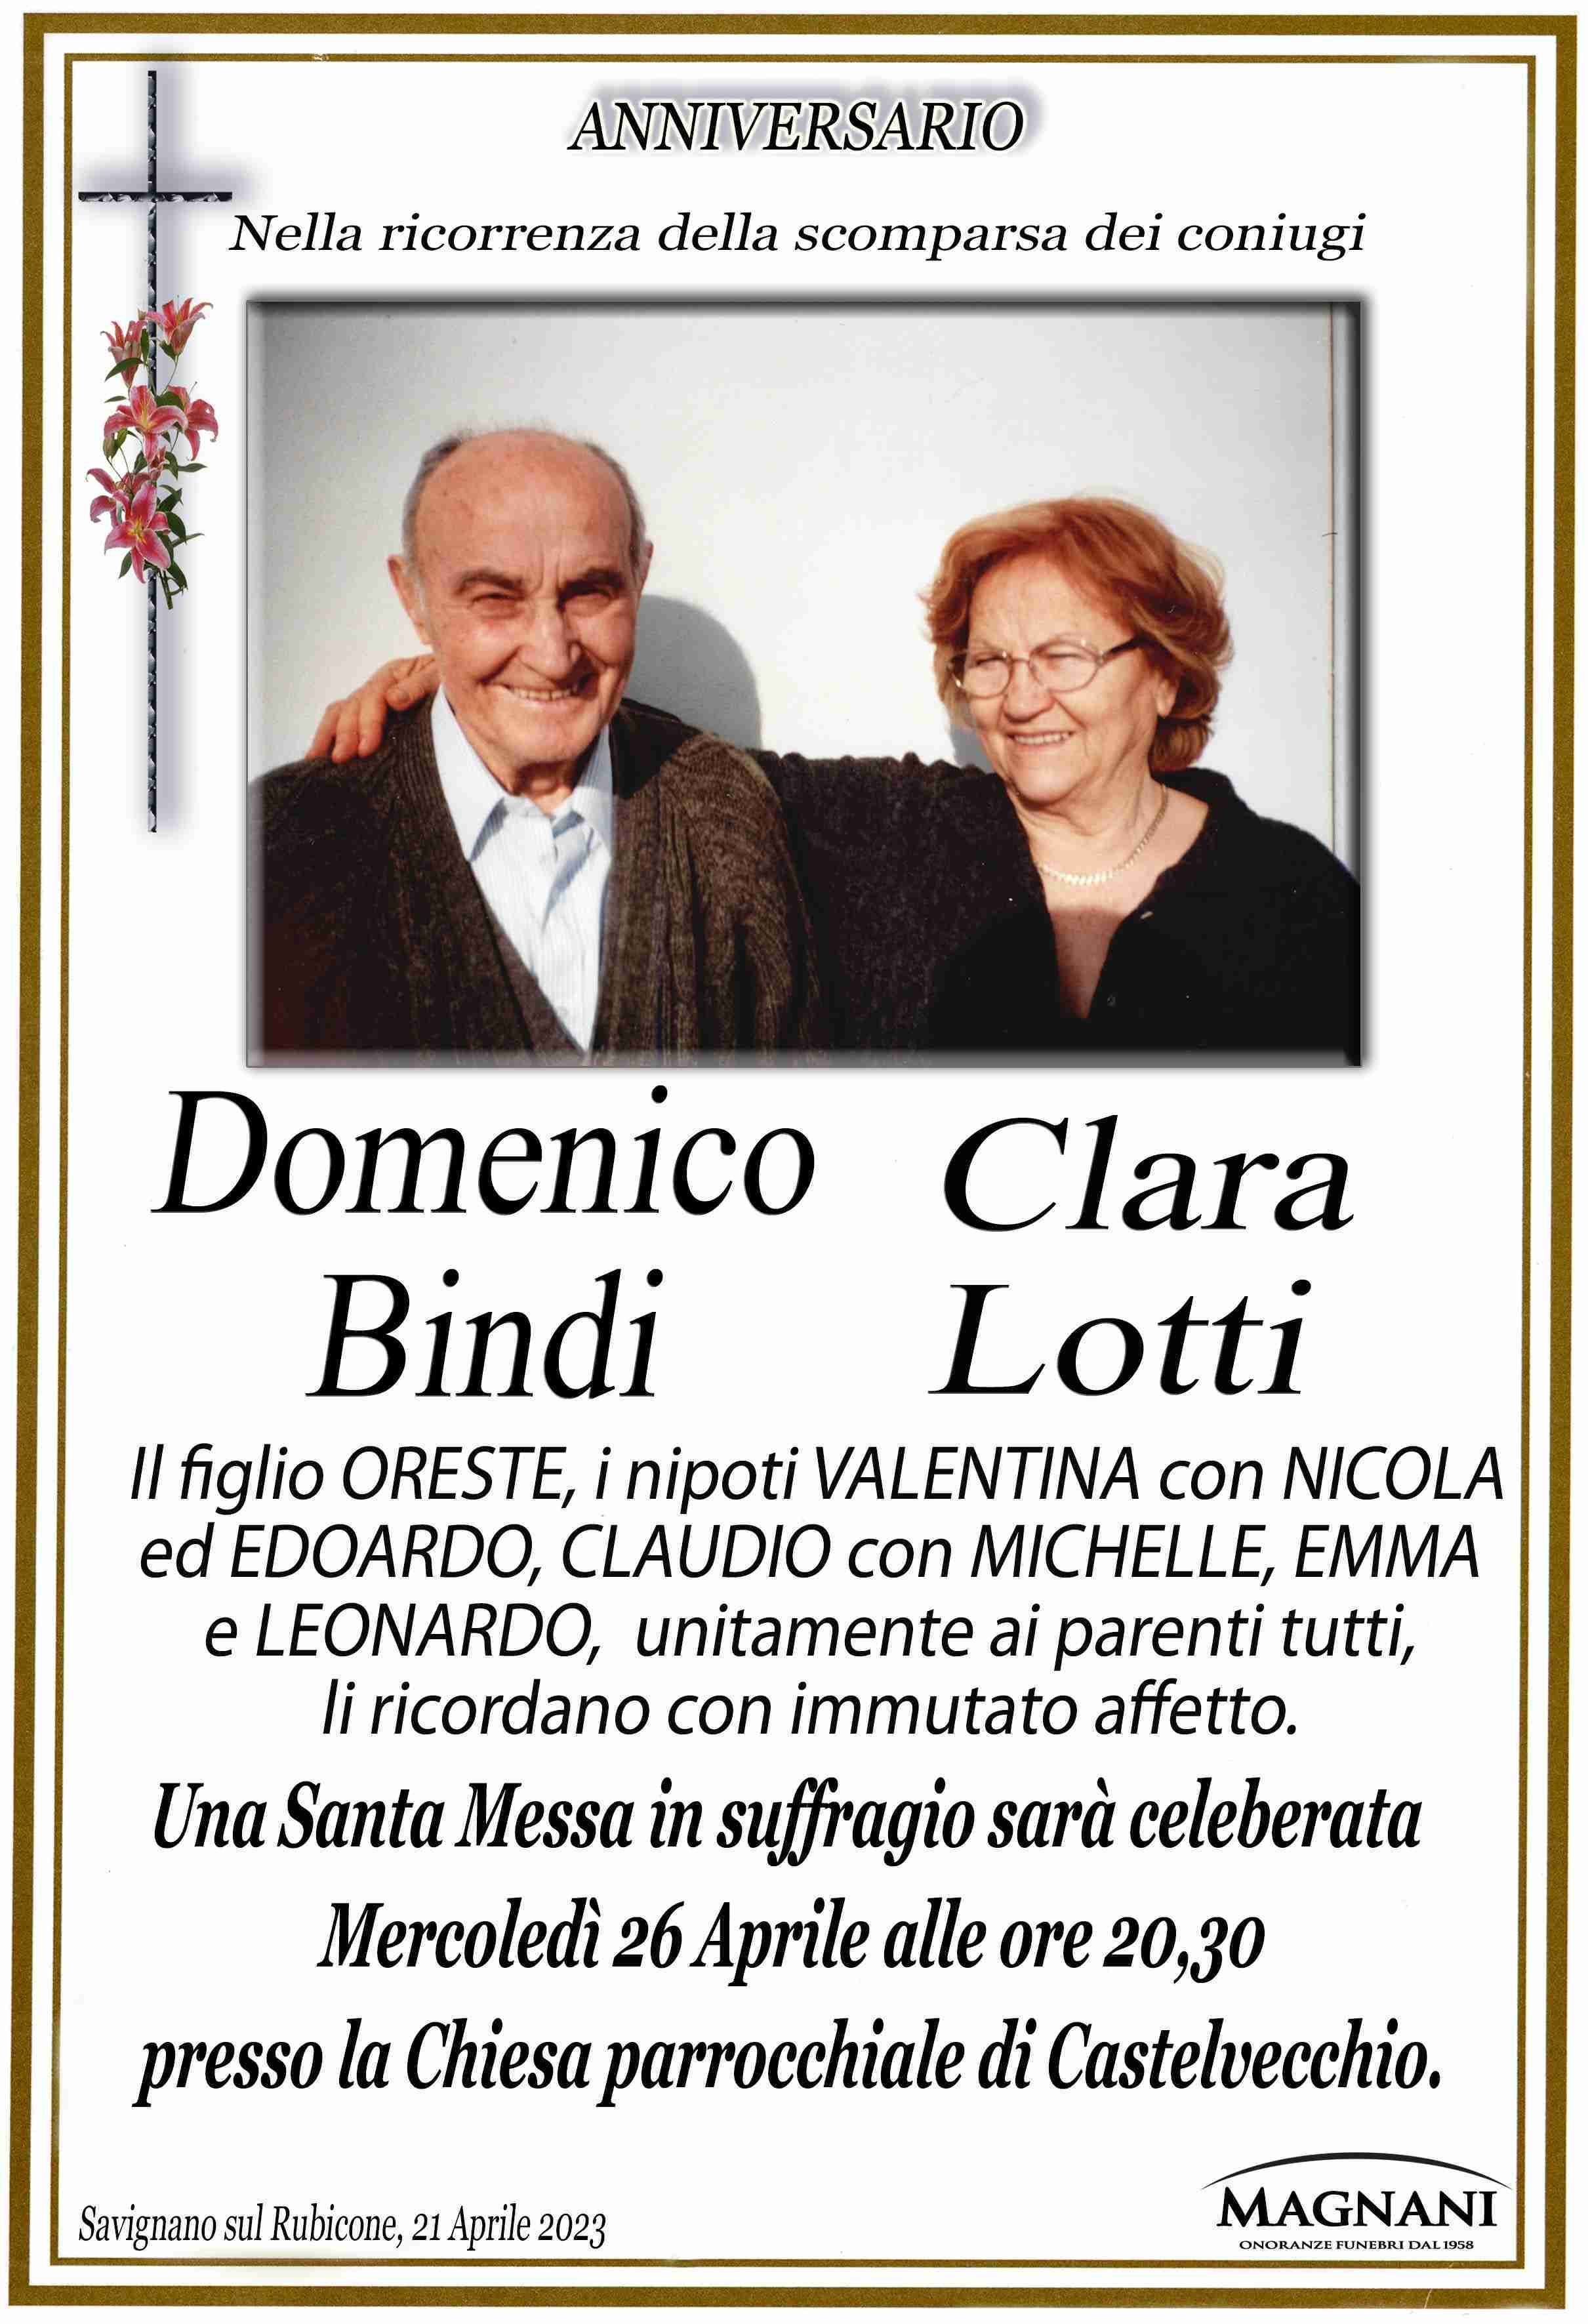 Domenico Bindi e Clara Lotti